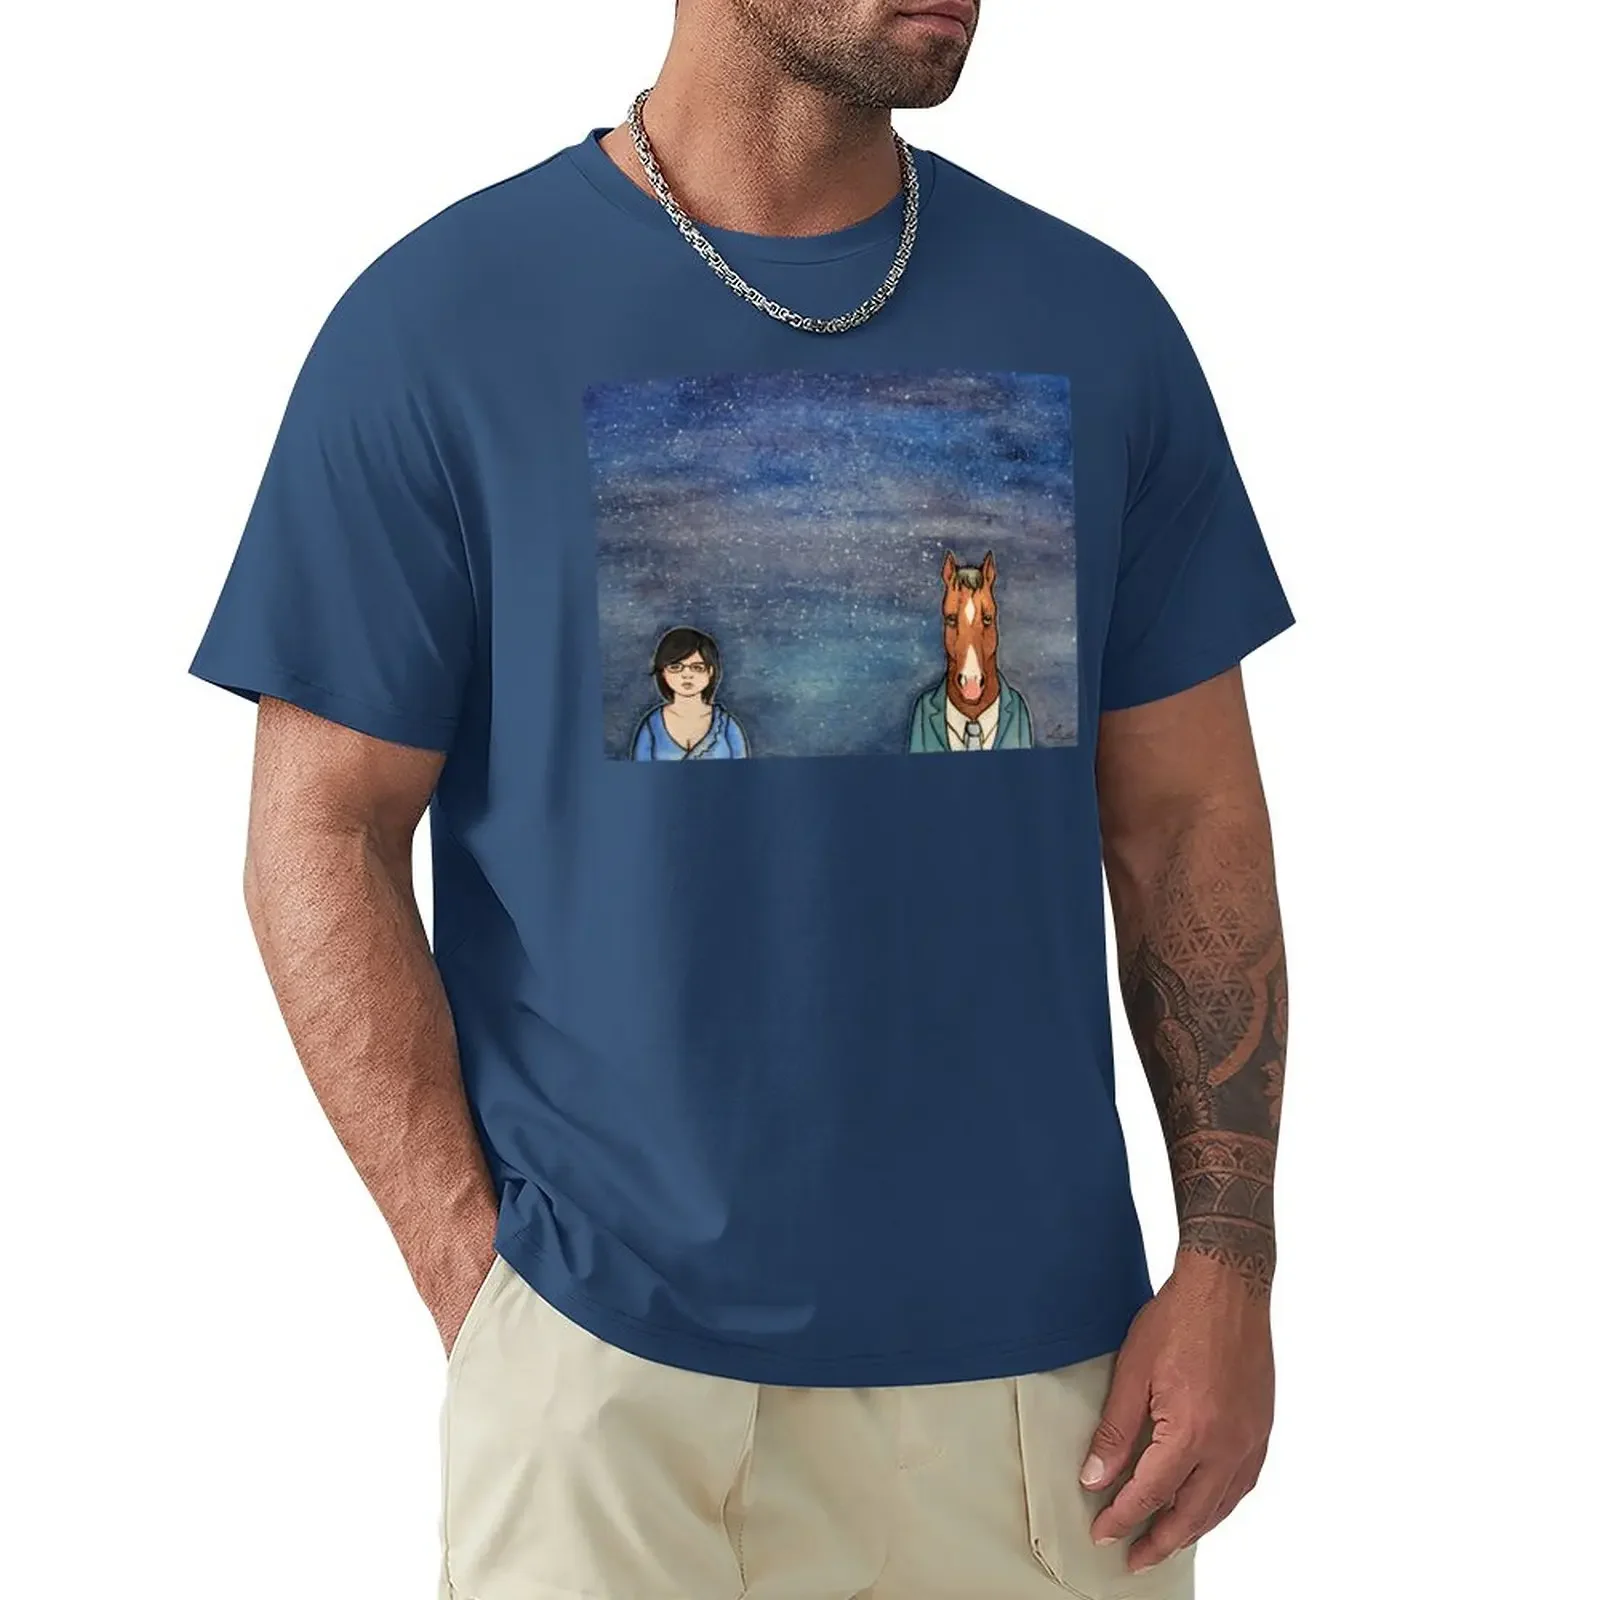 

Мужская винтажная футболка с надписью «Mr Blue»